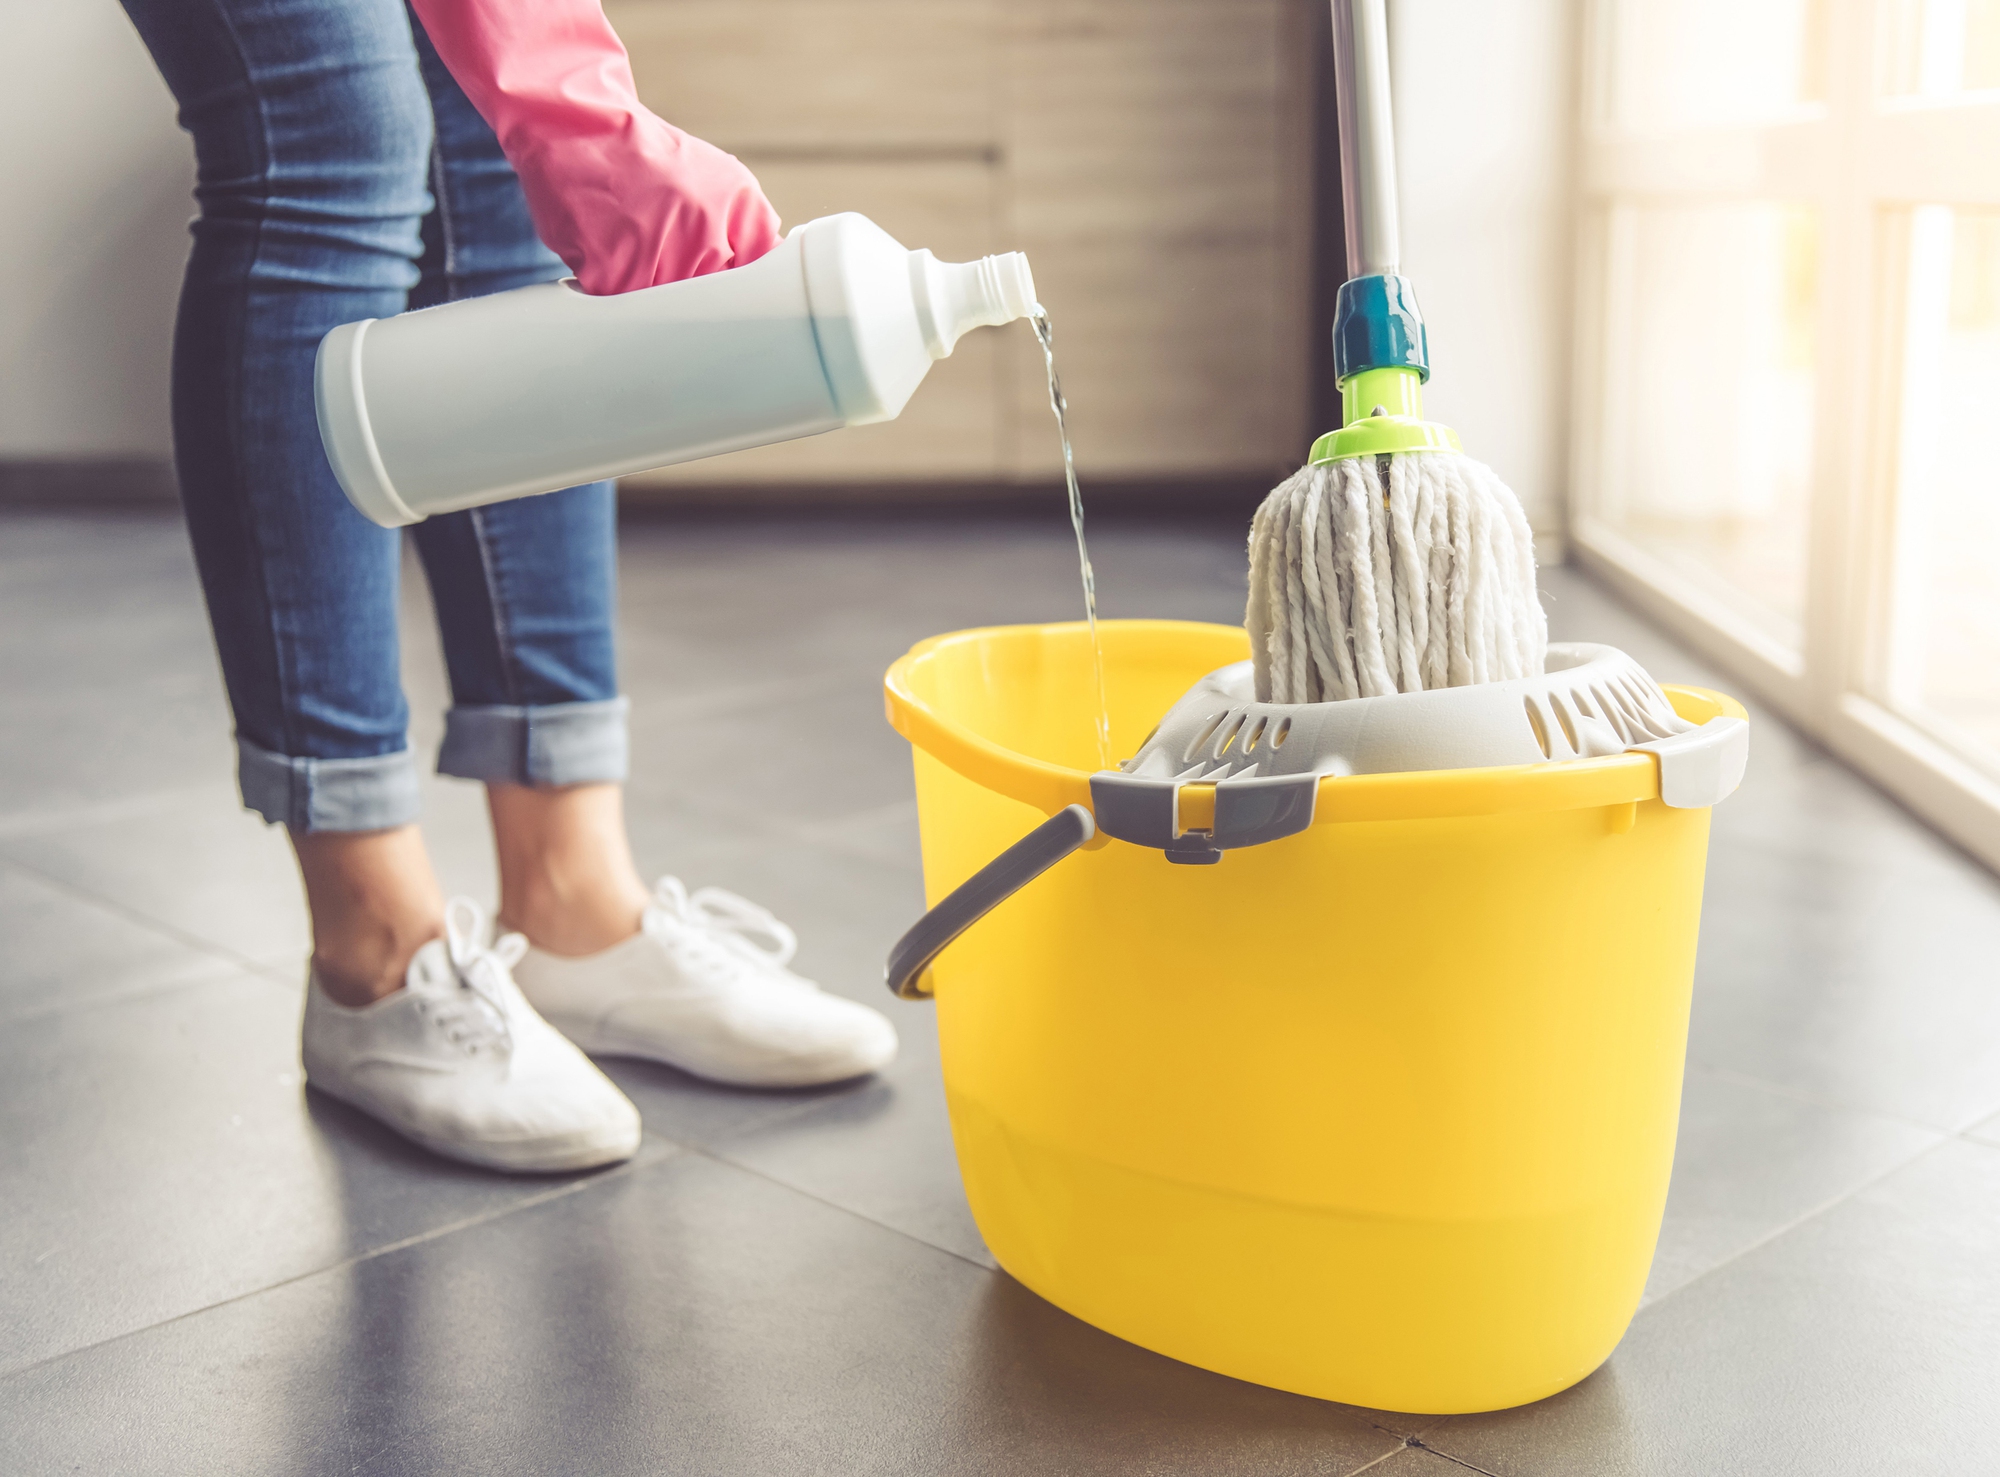 Quy tắc này chắc chắn sẽ giúp các chị em thay đổi cách dọn dẹp nhà cửa, để nhà sạch sạch thơm, tâm trạng phấn chấn - Ảnh 2.